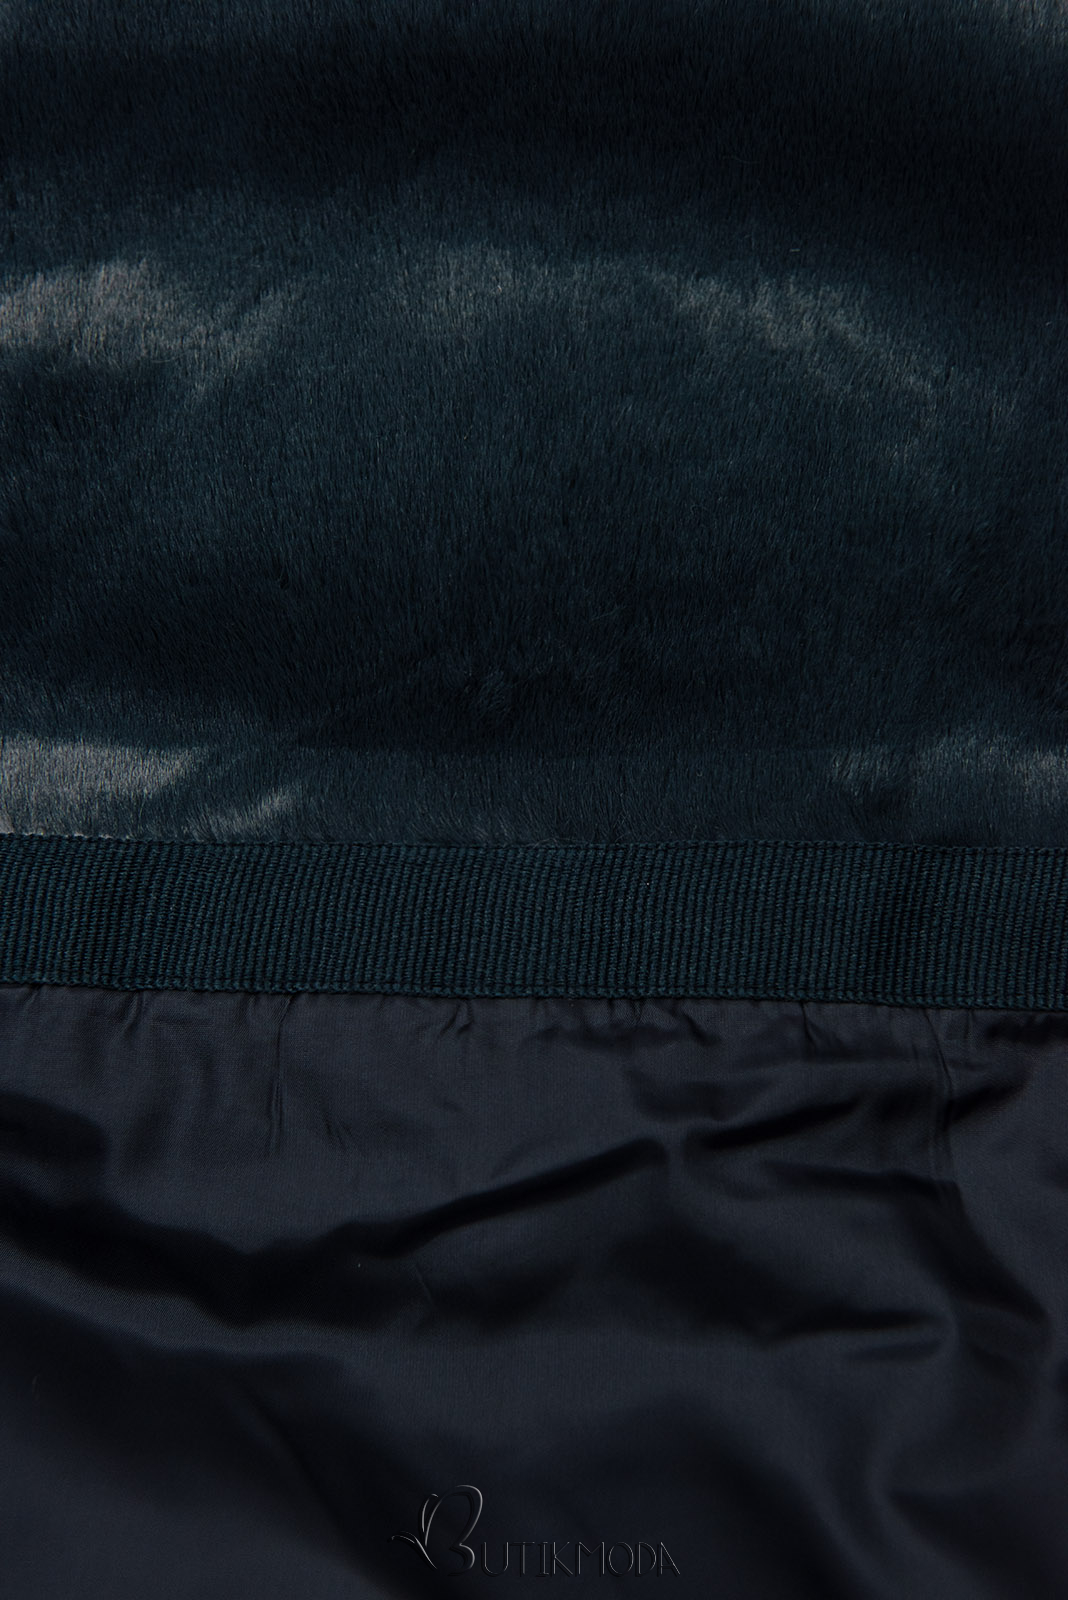 Dark blue winter jacket with belt